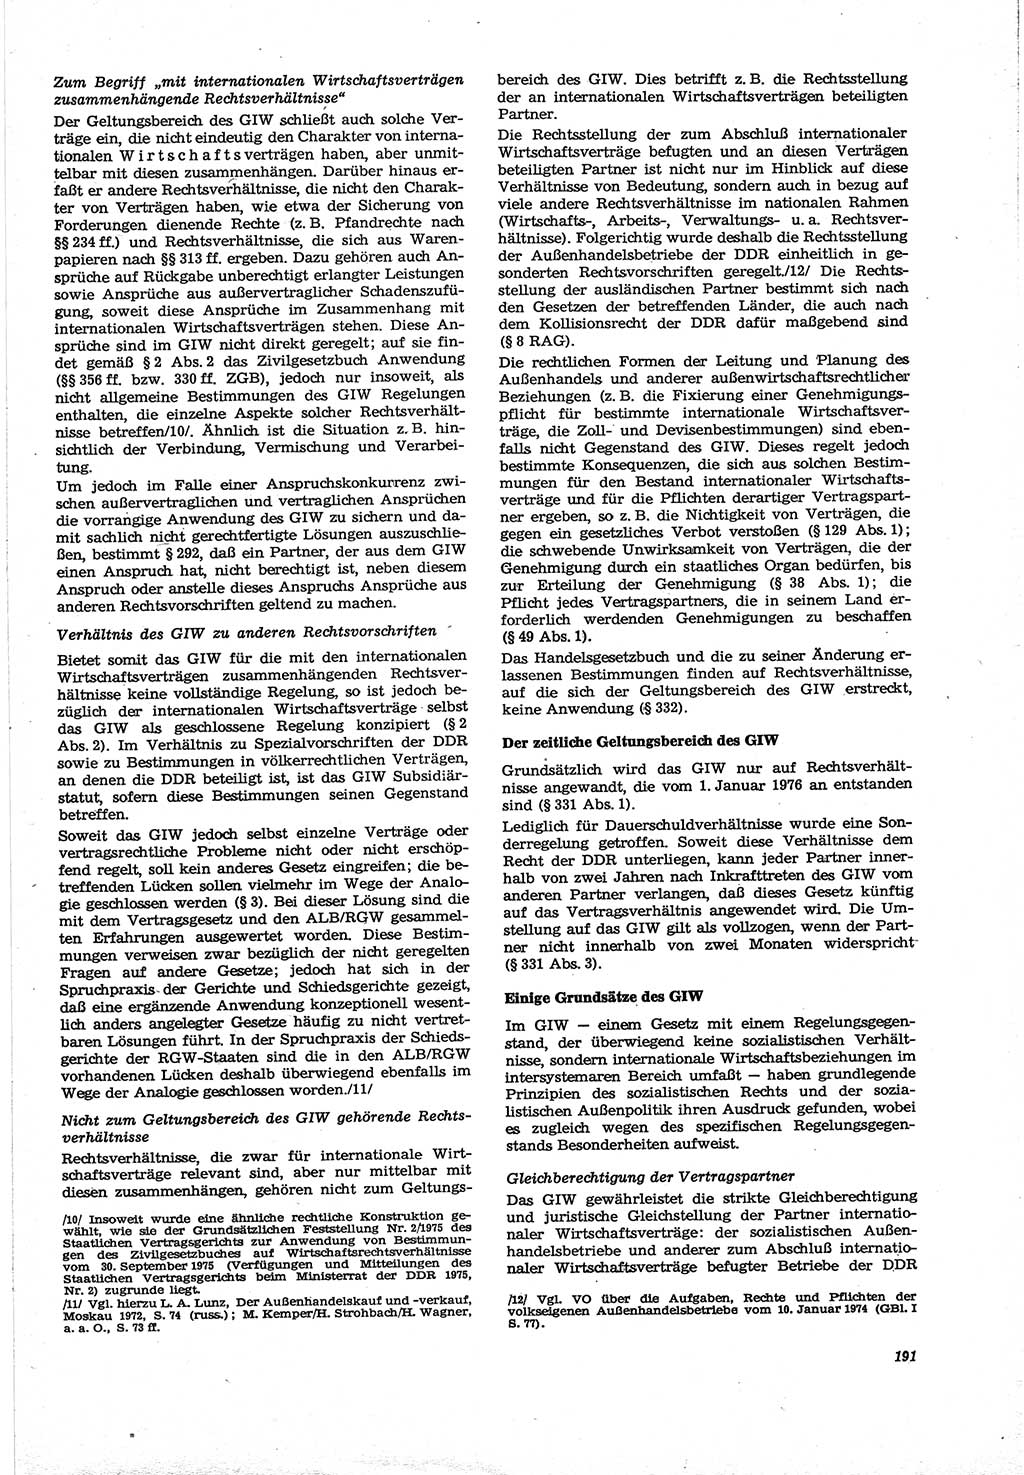 Neue Justiz (NJ), Zeitschrift für Recht und Rechtswissenschaft [Deutsche Demokratische Republik (DDR)], 30. Jahrgang 1976, Seite 191 (NJ DDR 1976, S. 191)